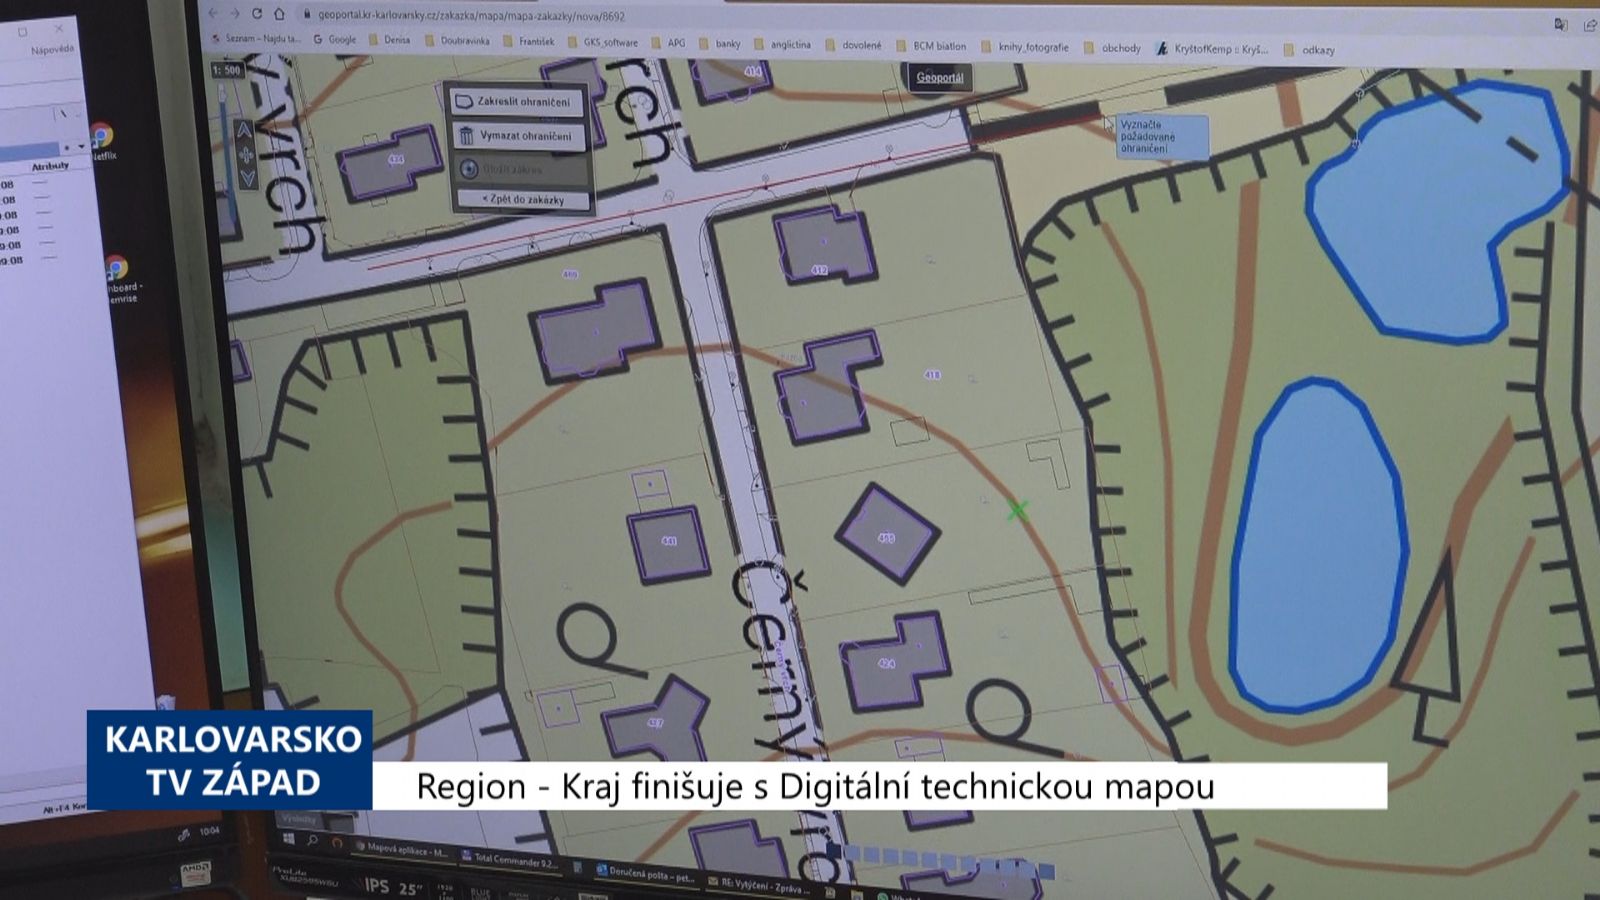 Region: Kraj finišuje s Digitální technickou mapou (TV Západ)